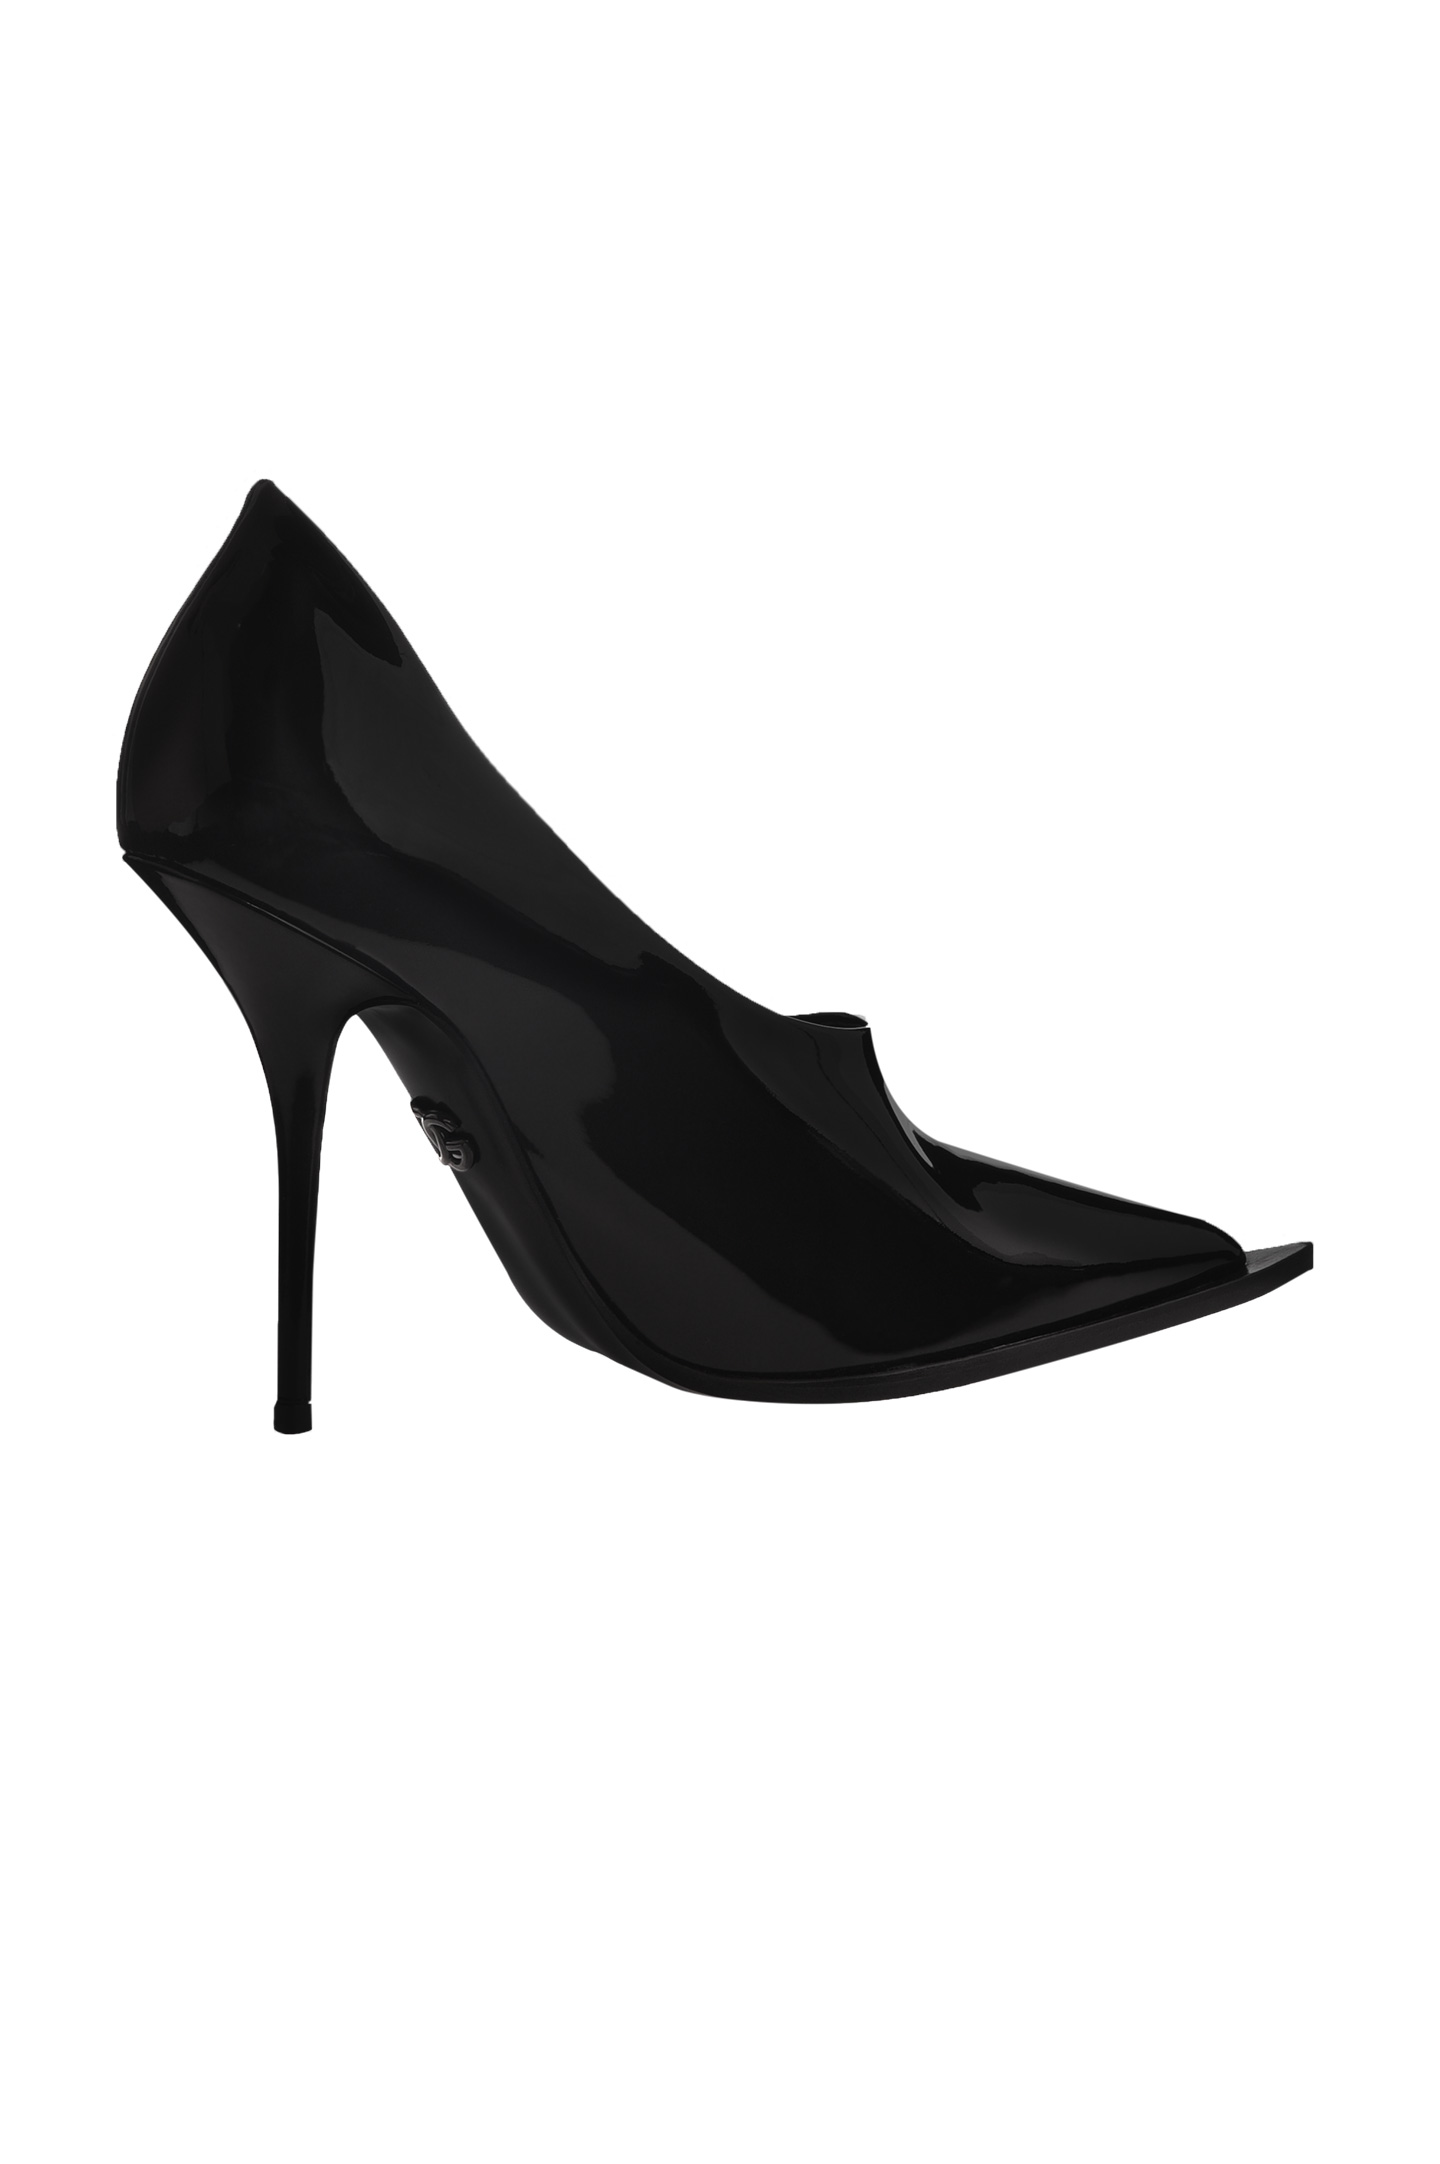 Туфли DOLCE & GABBANA CD1633 A1471, цвет: Черный, Женский